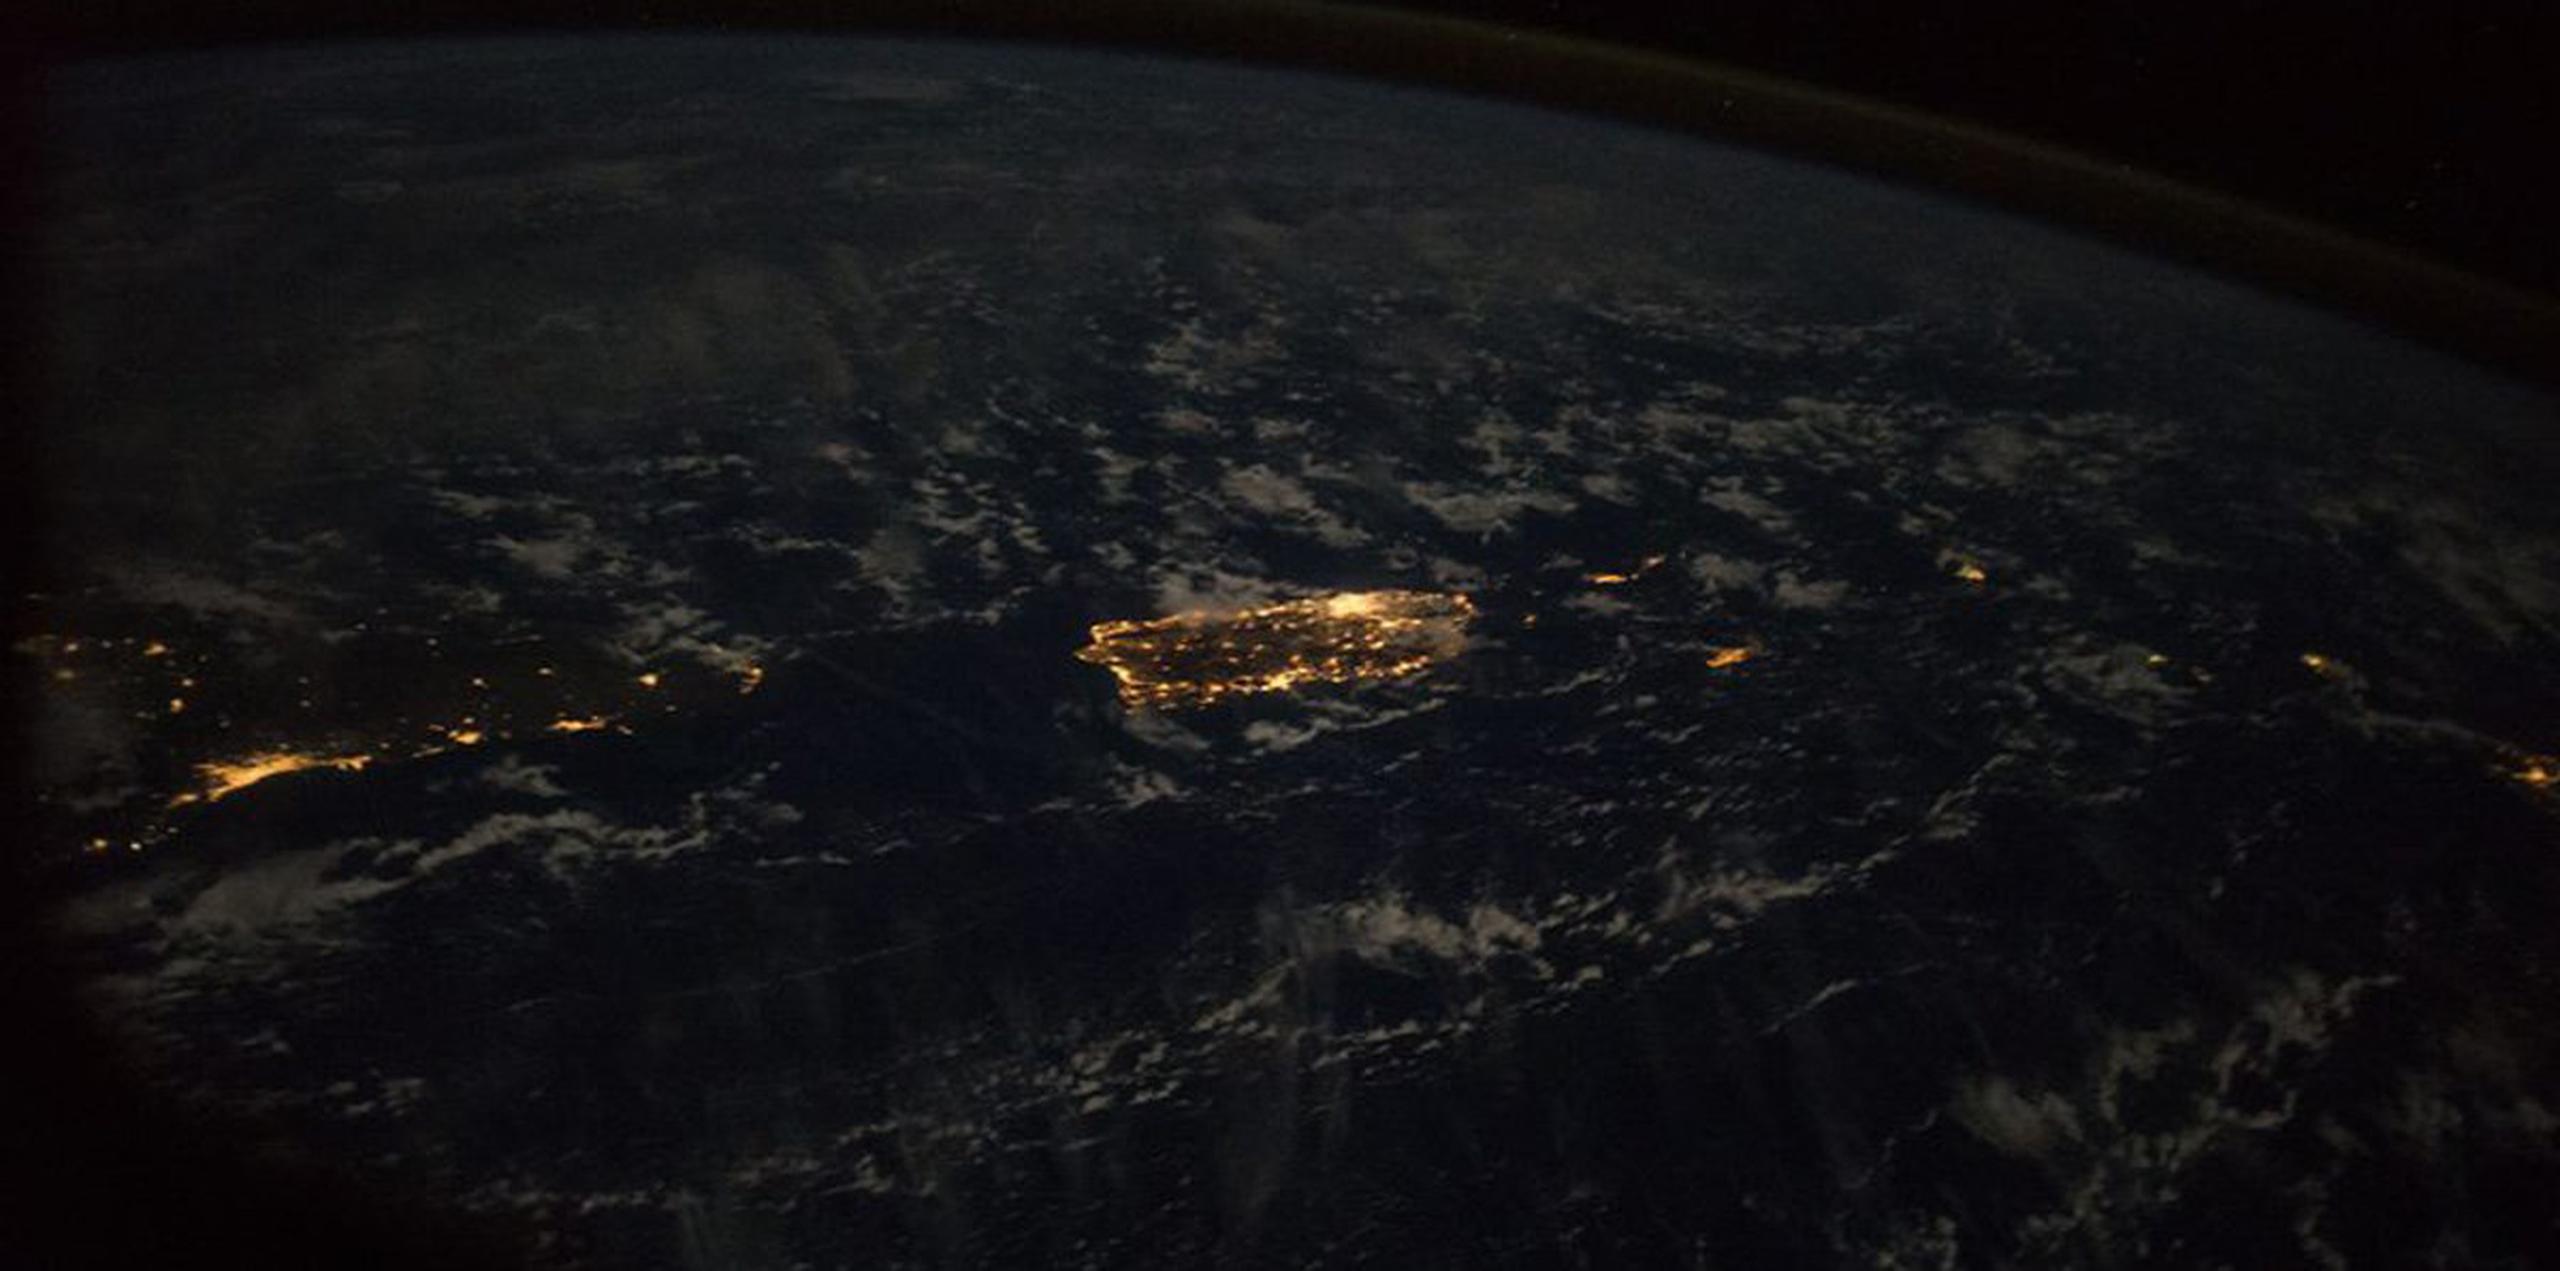 Esta imagen tomada desde la Estación Espacial Internacional muestra cómo luce Puerto Rico e islas vecinas de noche, y también se aprecia al fondo la curvatura del planeta. (NASA)